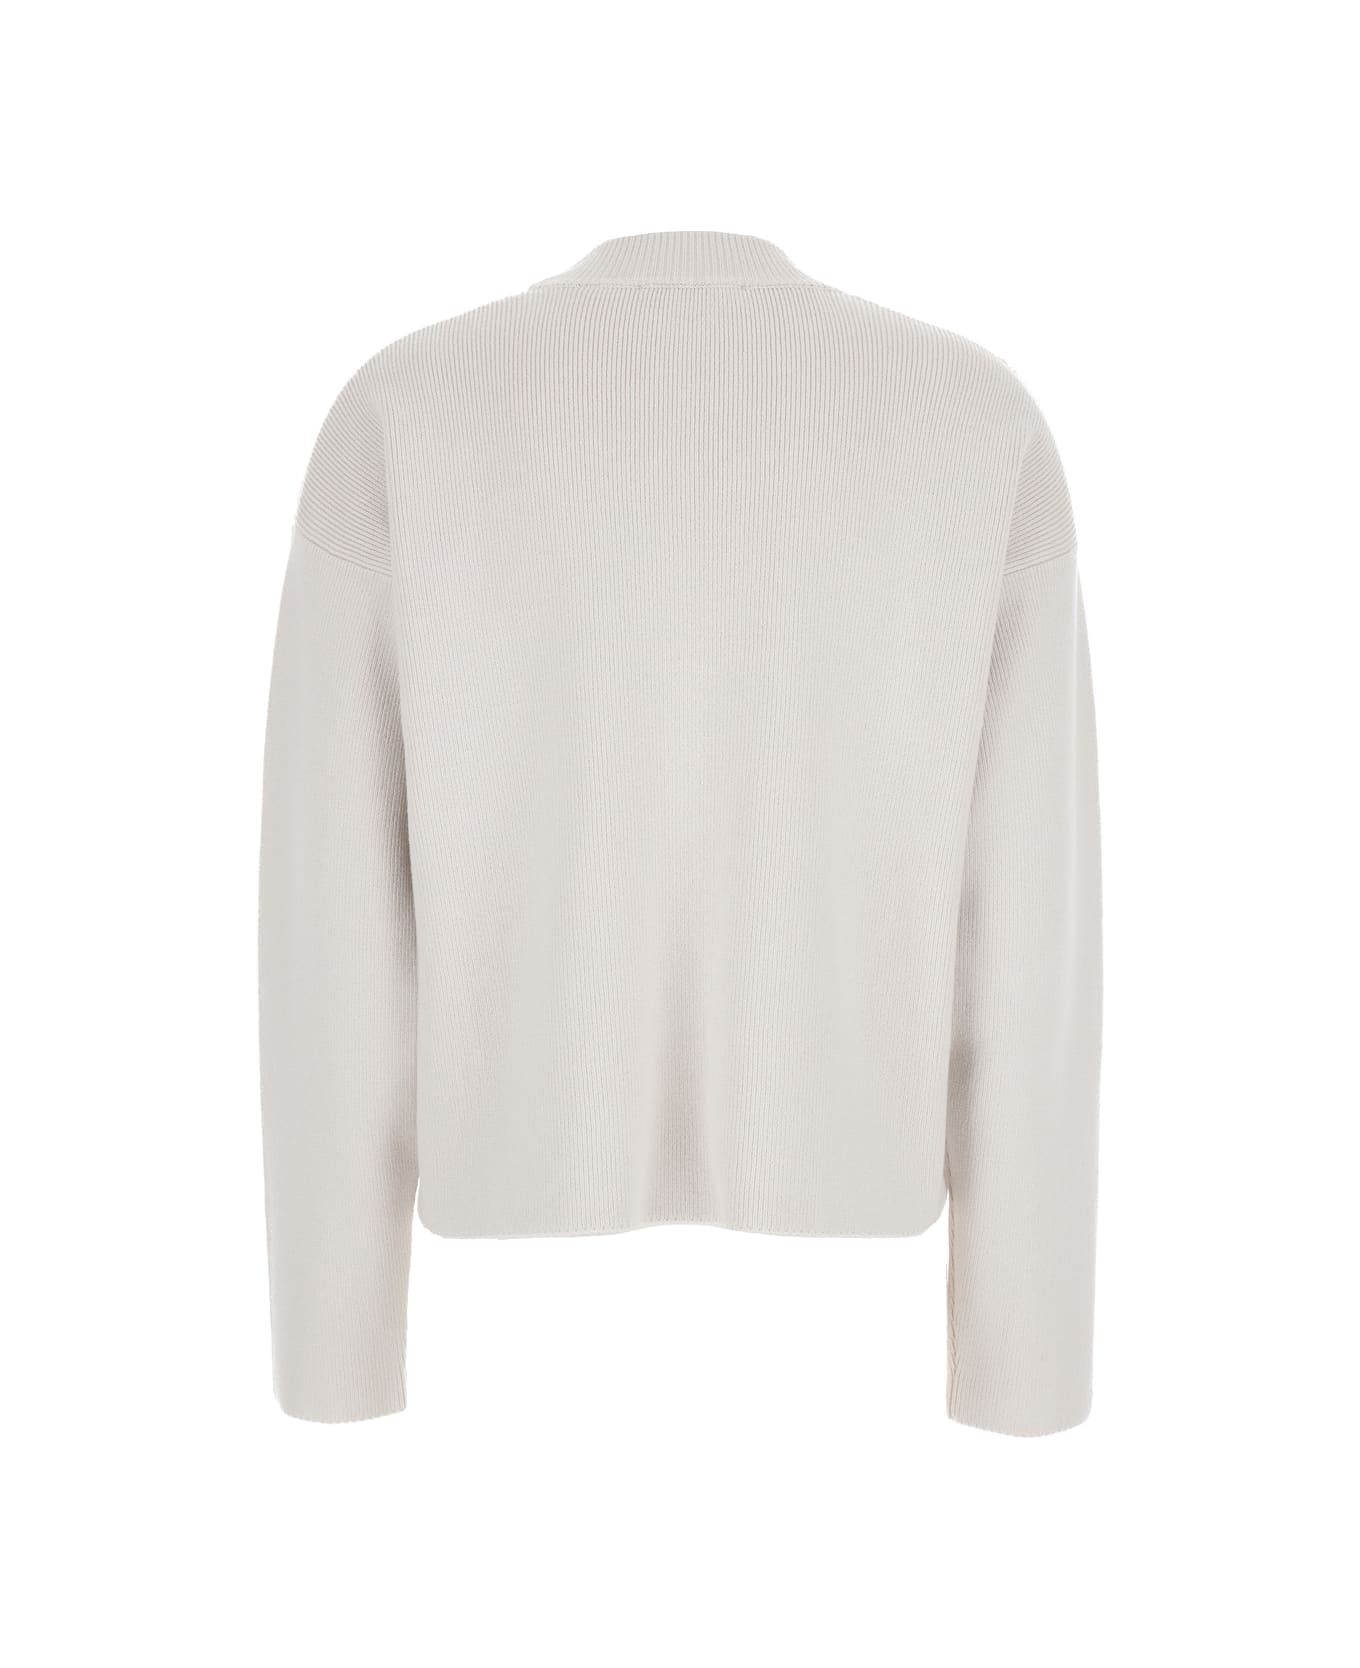 Ami Alexandre Mattiussi White Crewneck Sweater With Signature Ami De Coeur Logo In Cotton Blend Woman - White